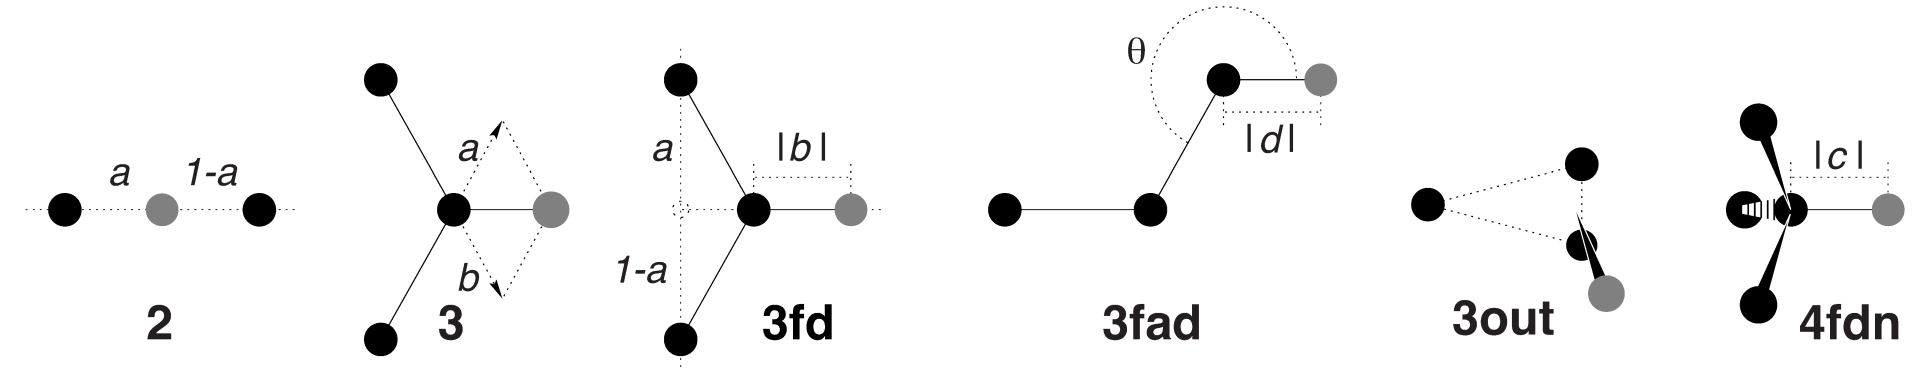 图4.19: GROMACS中六种不同类型虚拟位点的构建方式. 黑色为构建原子, 灰色为虚拟位点.